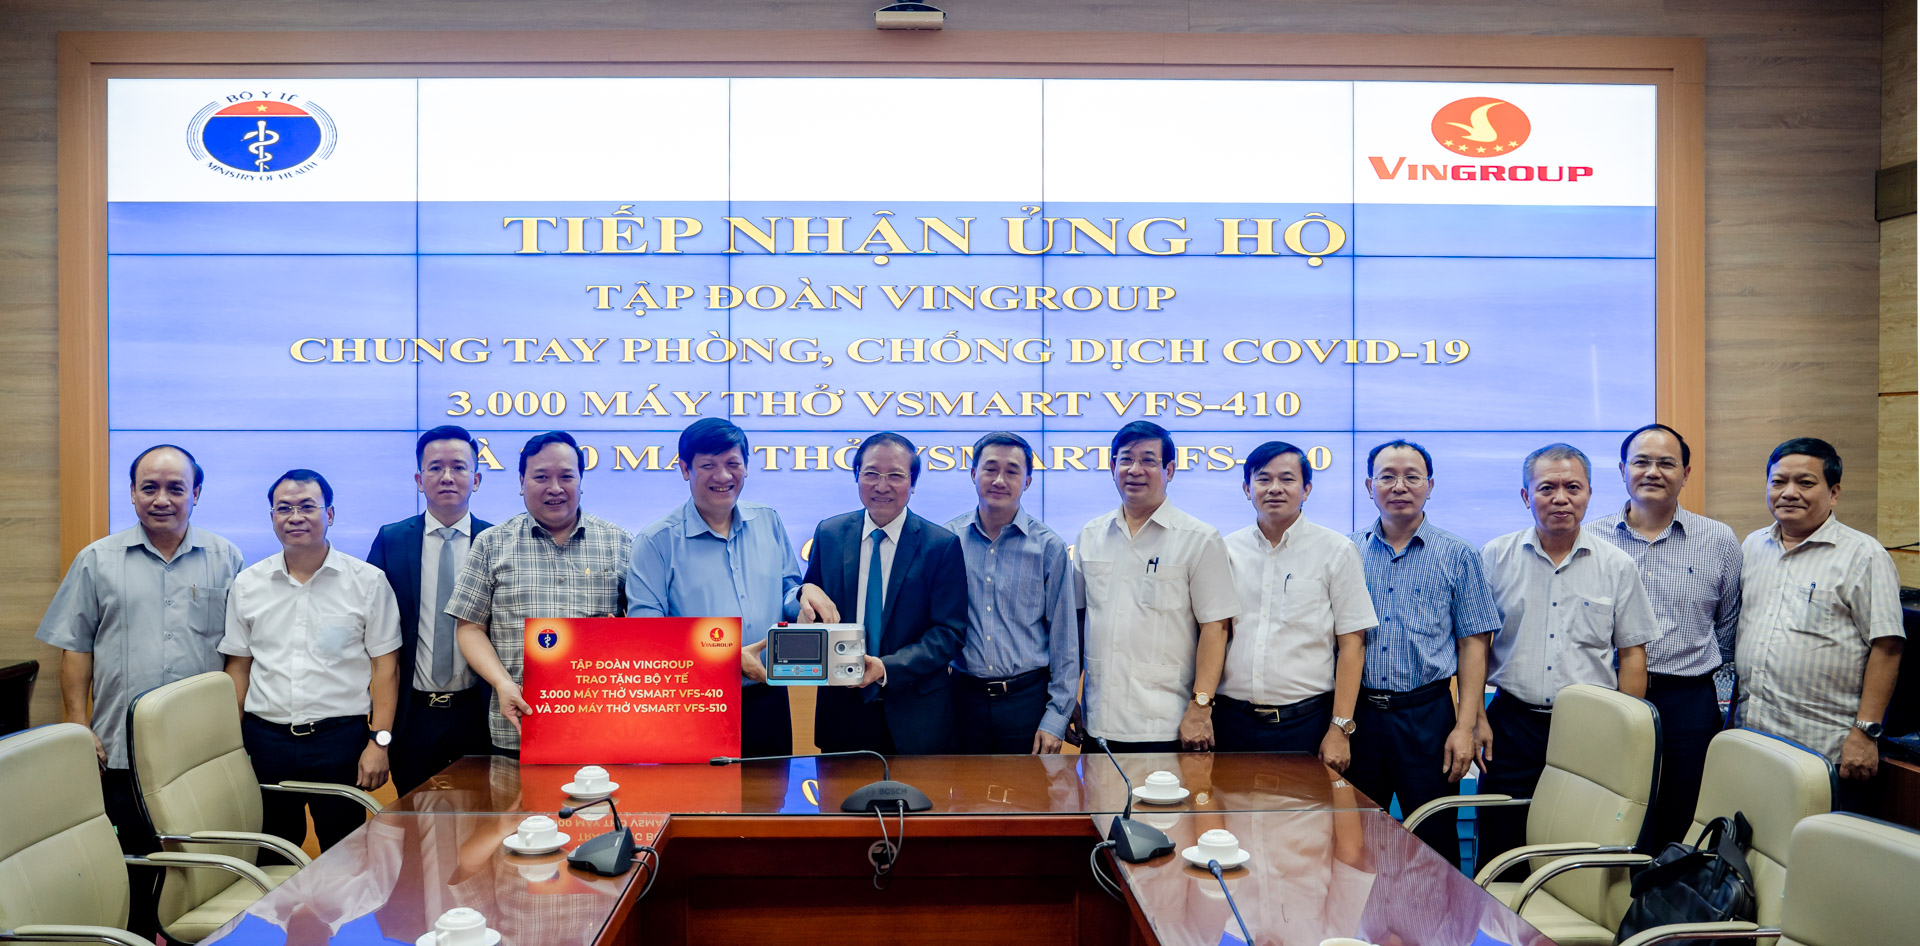 Đại diện Tập đoàn Vingroup trao tặng Bộ Y tế 3.000 máy thở Vsmart VFS-410 và 200 máy thở Vsmart VFS-510.